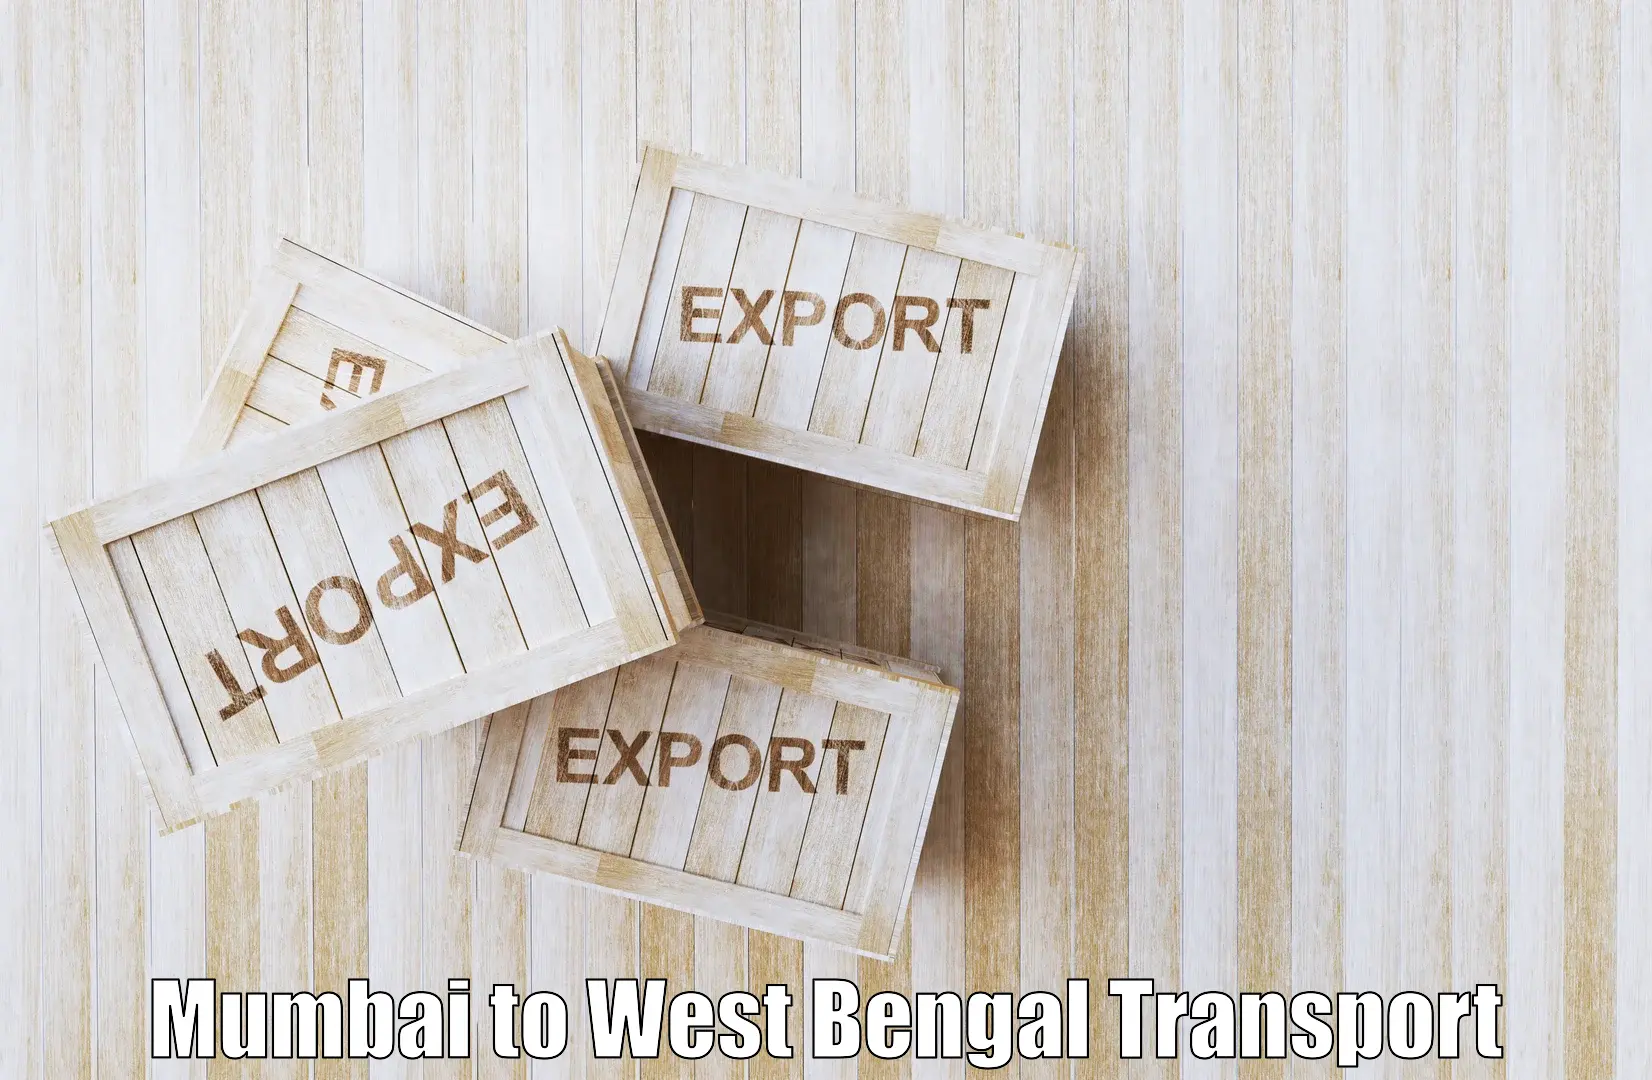 Daily transport service Mumbai to Panagarh